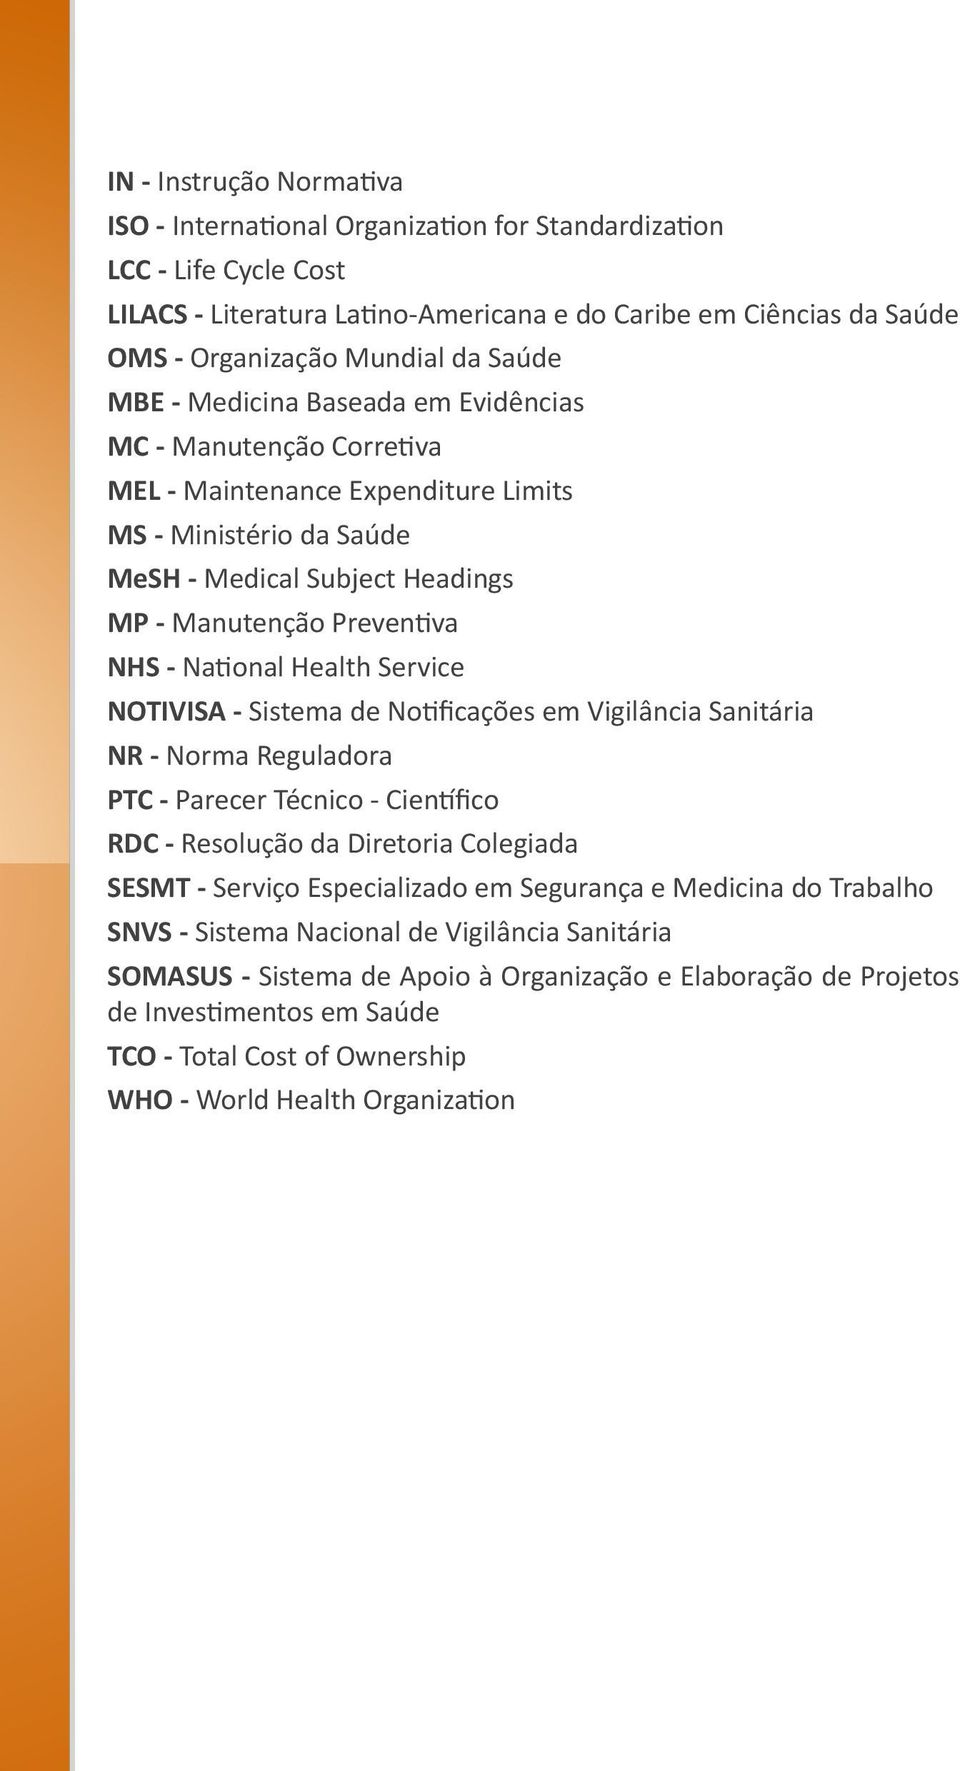 National Health Service NOTIVISA - Sistema de Notificações em Vigilância Sanitária NR - Norma Reguladora PTC - Parecer Técnico - Científico RDC - Resolução da Diretoria Colegiada SESMT - Serviço